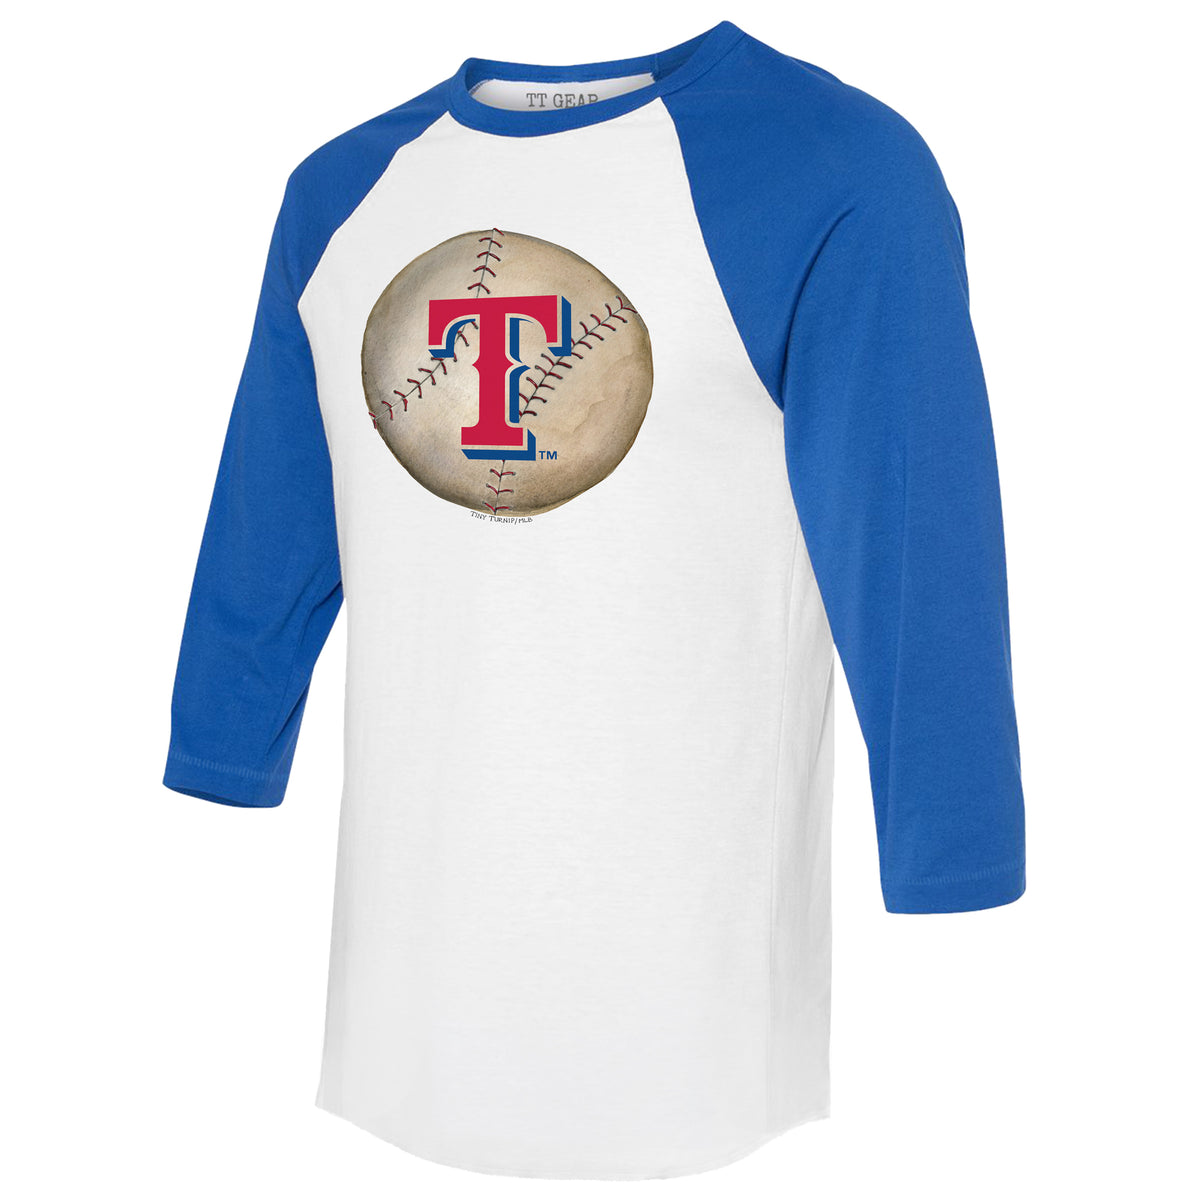 Tiny Turnip Texas Rangers TT Rex Tee Shirt Youth Medium (8-10) / White